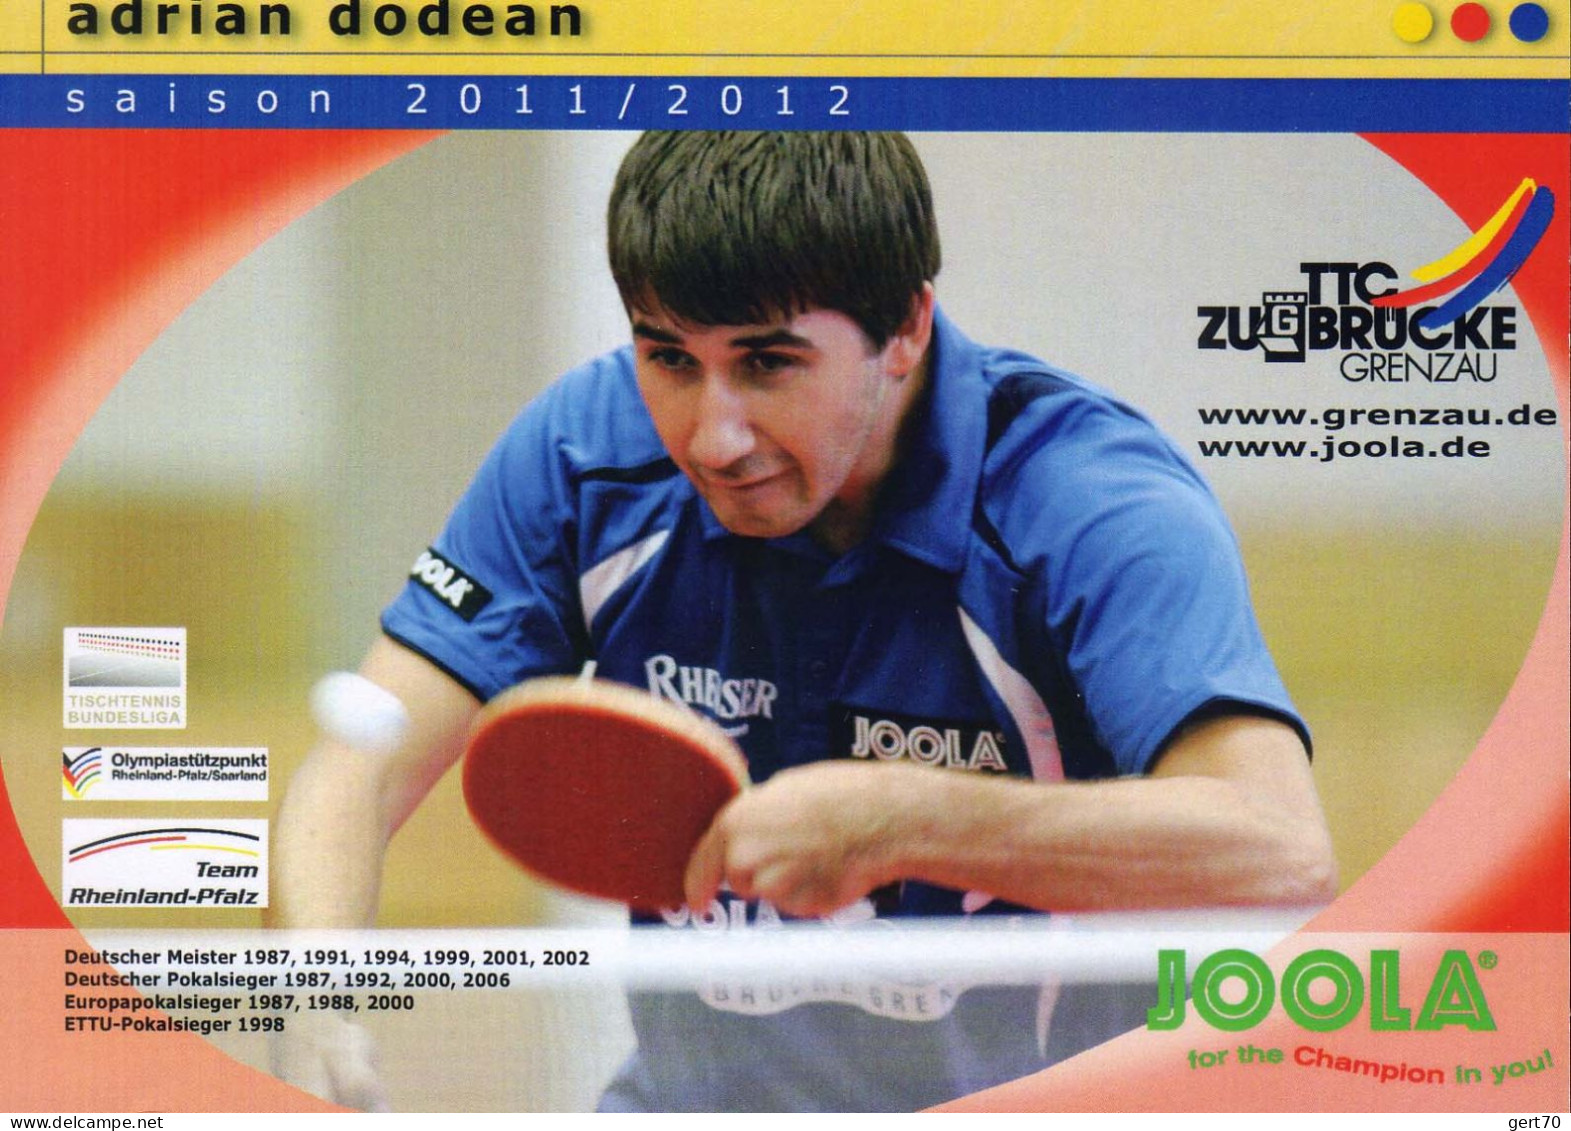 Romania / Roumanie 2012, Adrian Dodean - Table Tennis